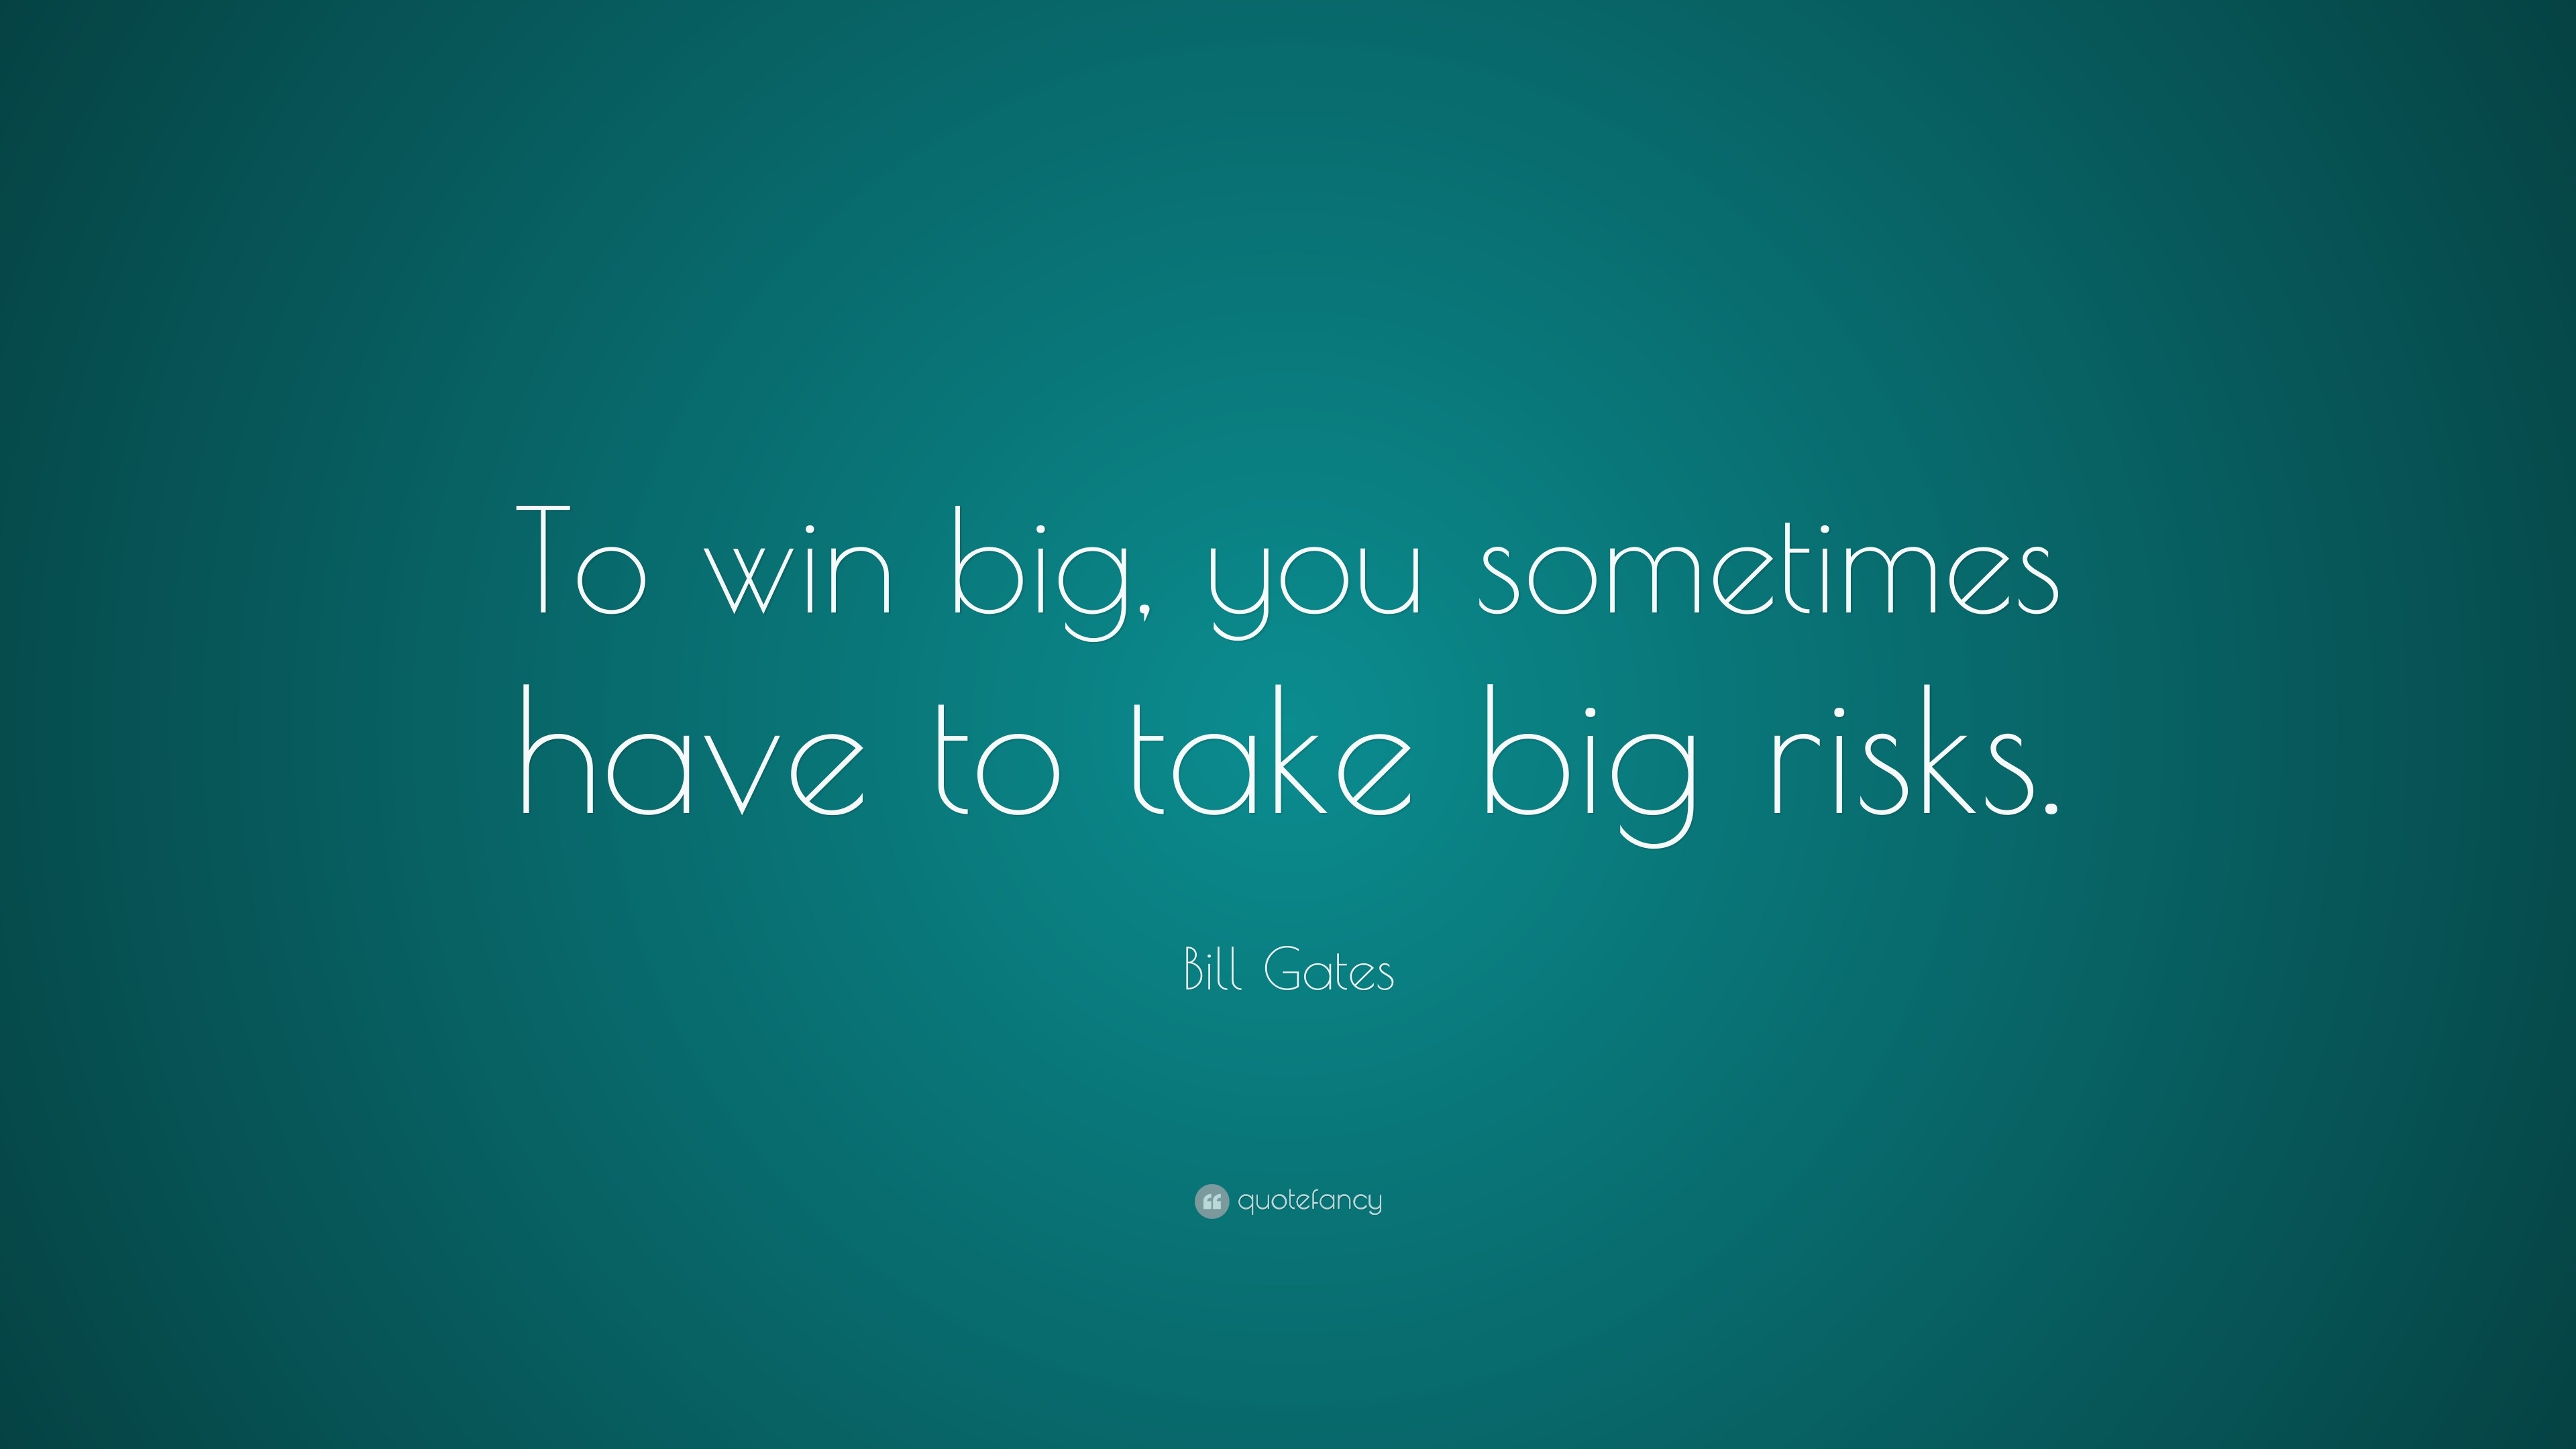 Bill Gates Quote: 